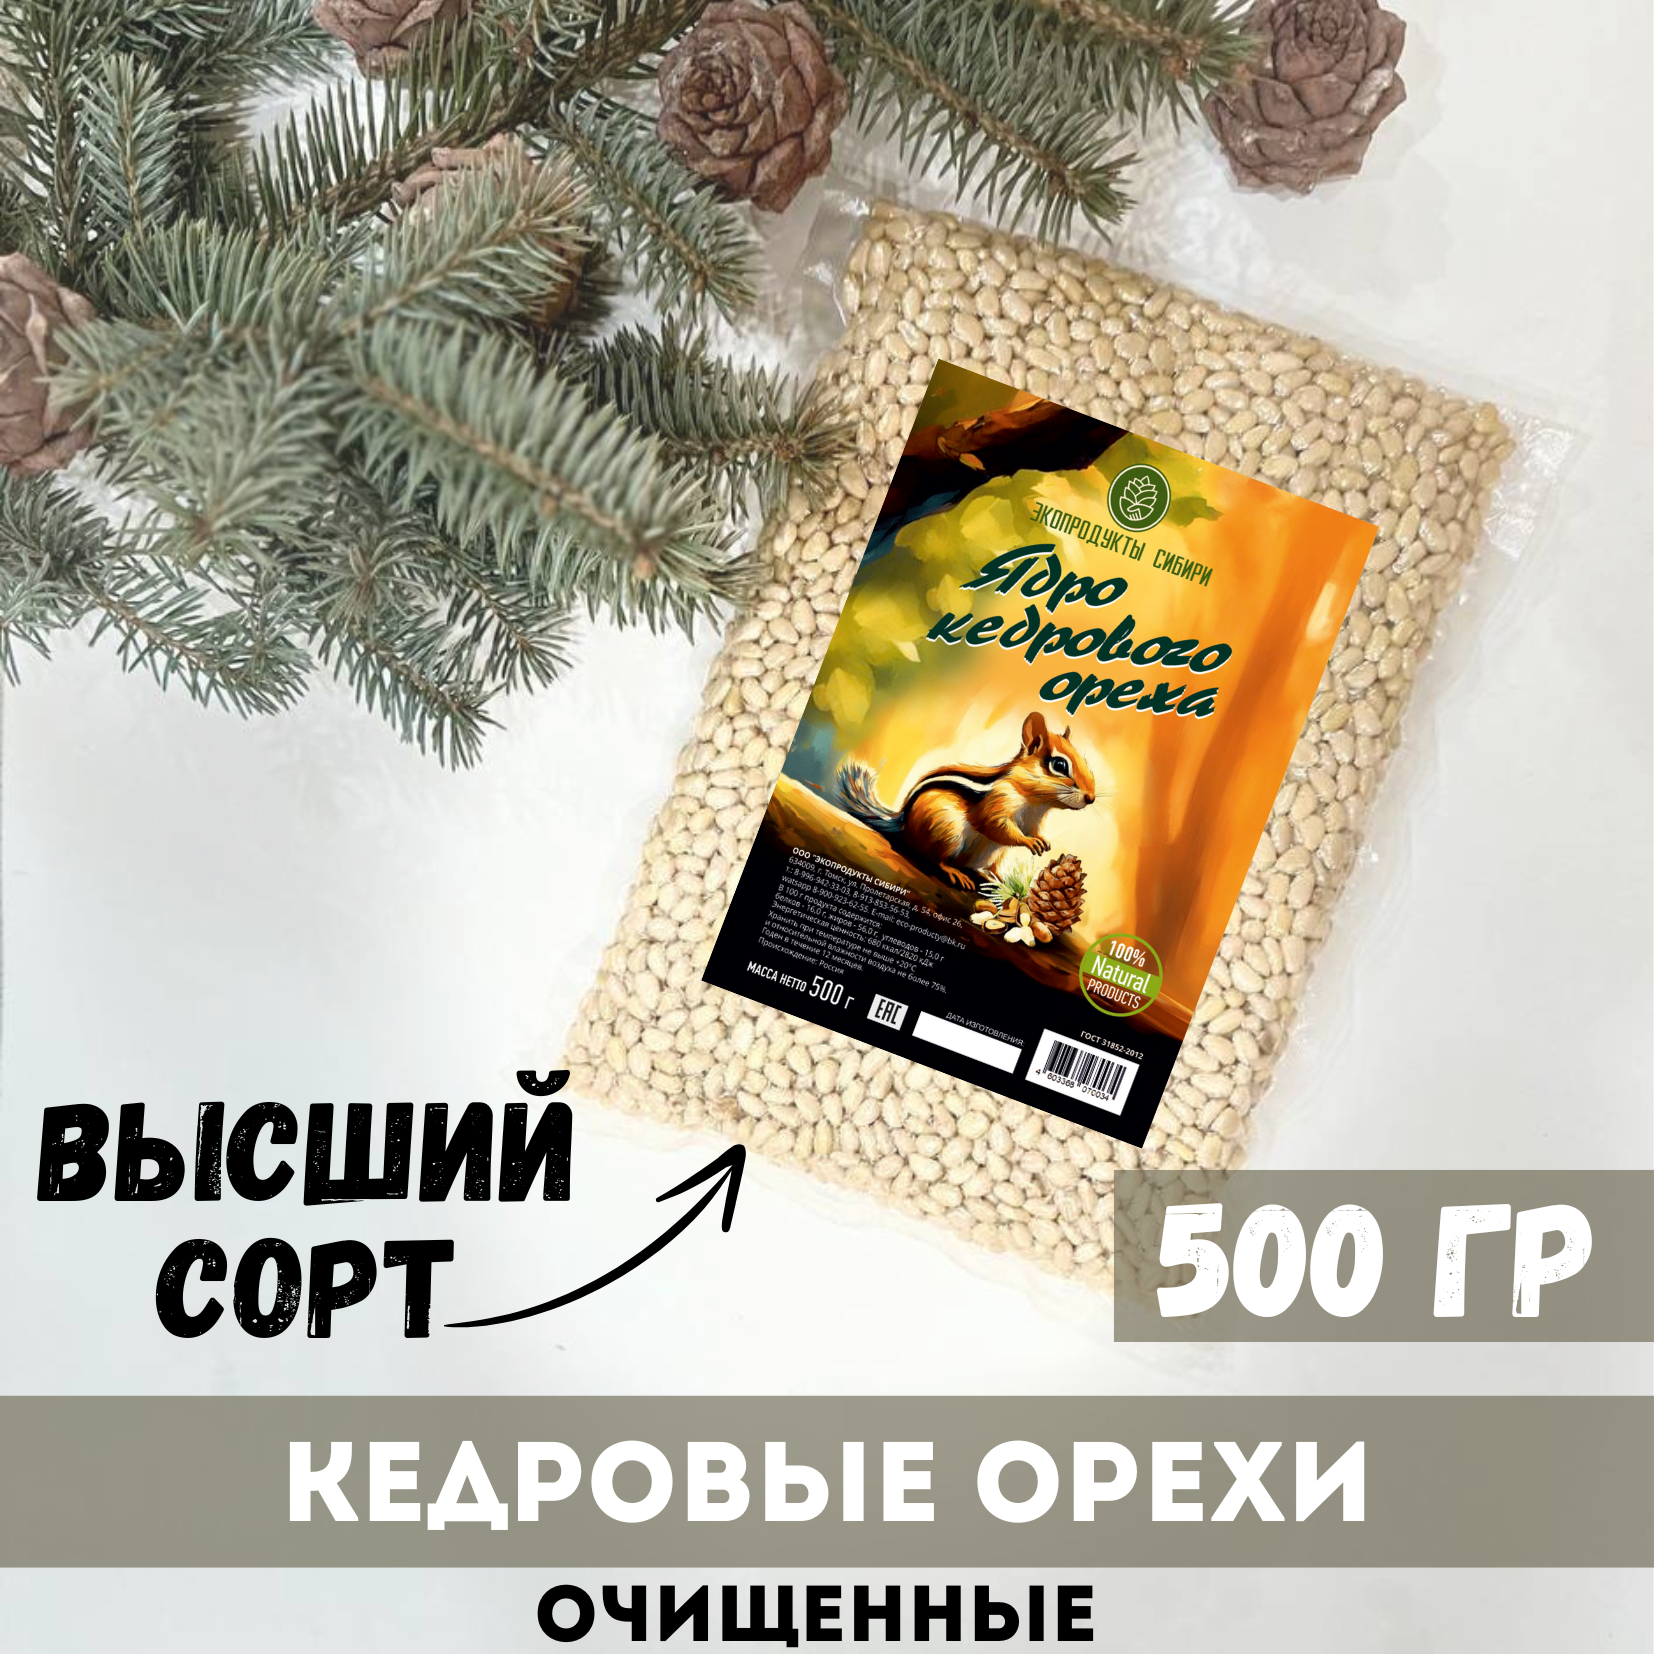 Орехи кедровые Экопродукты Сибири очищенные 500 г